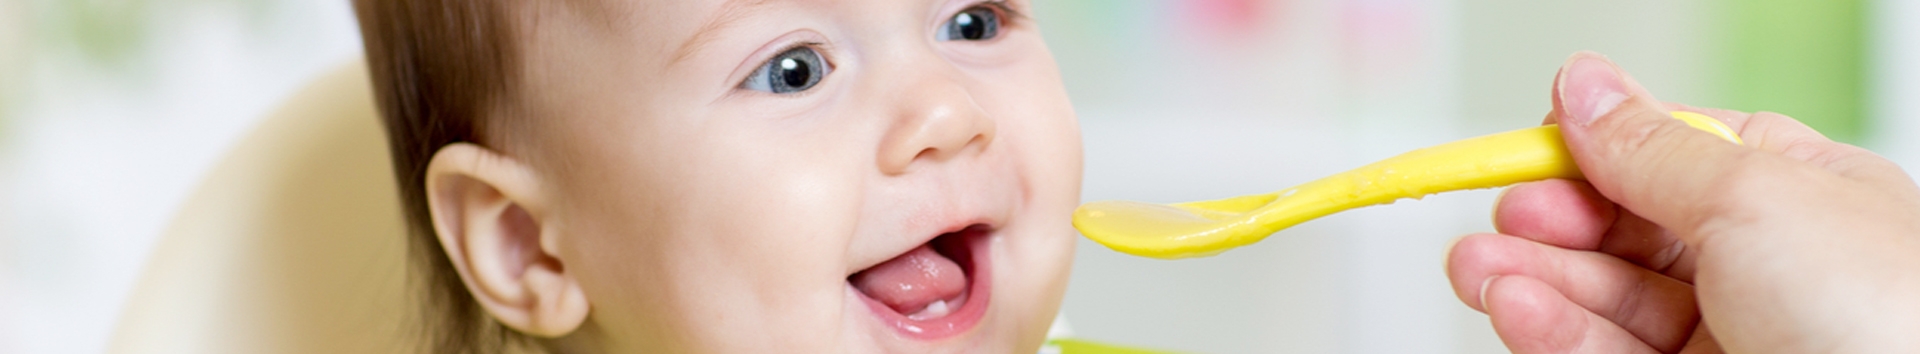 Papinha de bebê: 5 erros graves que você precisa corrigir urgente